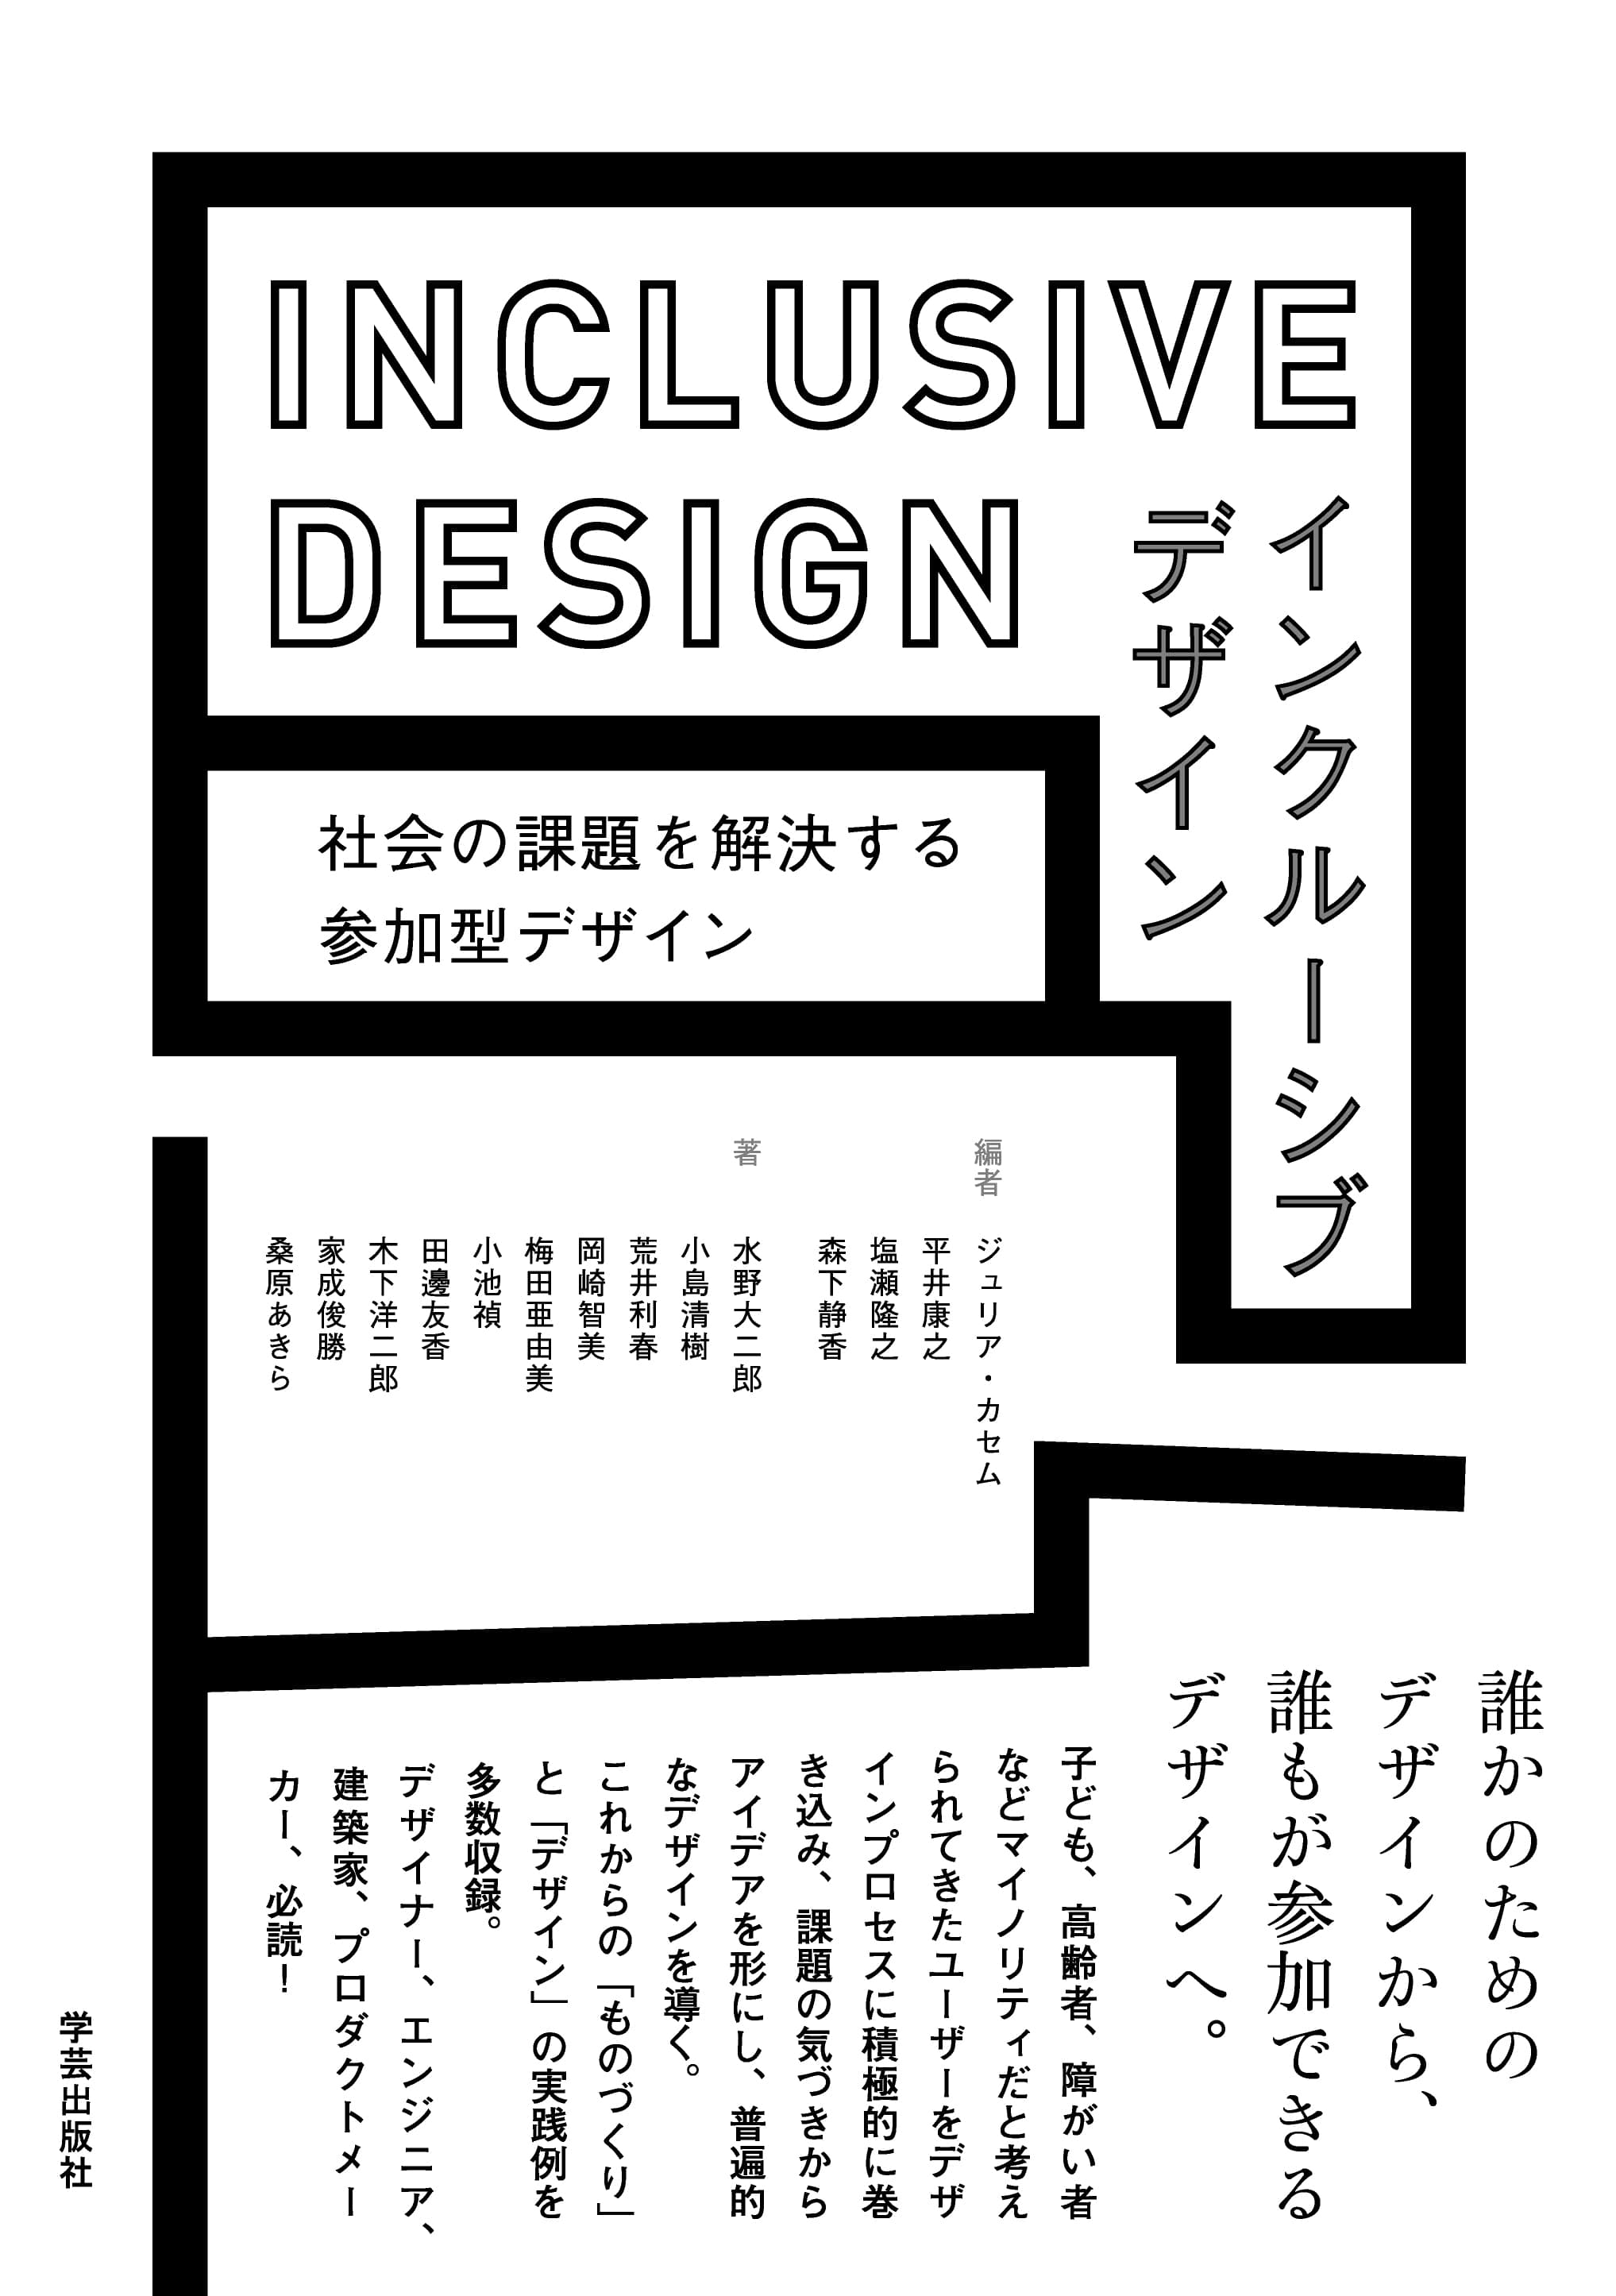 インクルーシブデザイン - 社会の課題を解決する参加型デザイン